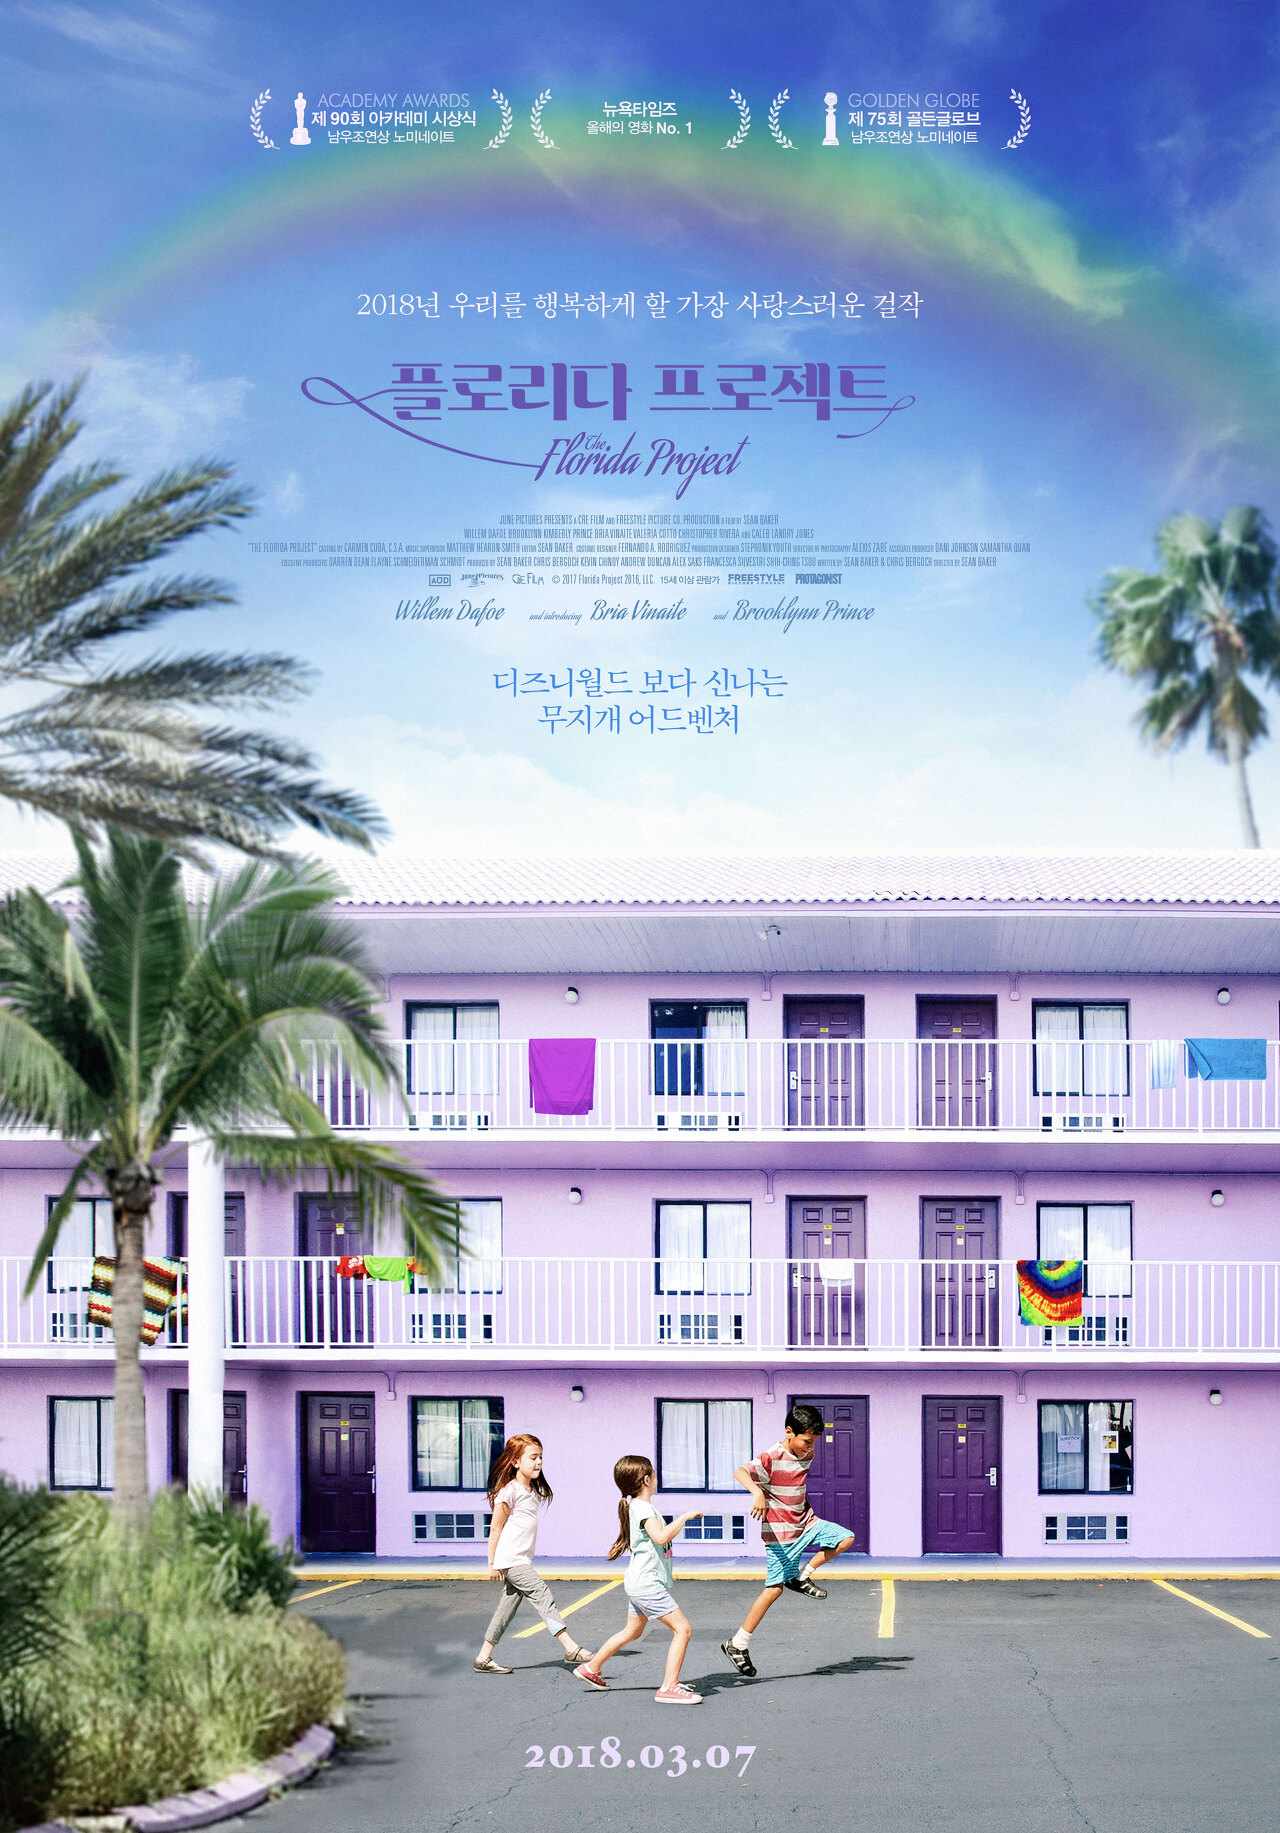 보라색 모텔 앞 세 명의 아이들이 있는 영화 플로리다 프로젝트 포스터 모습이다.